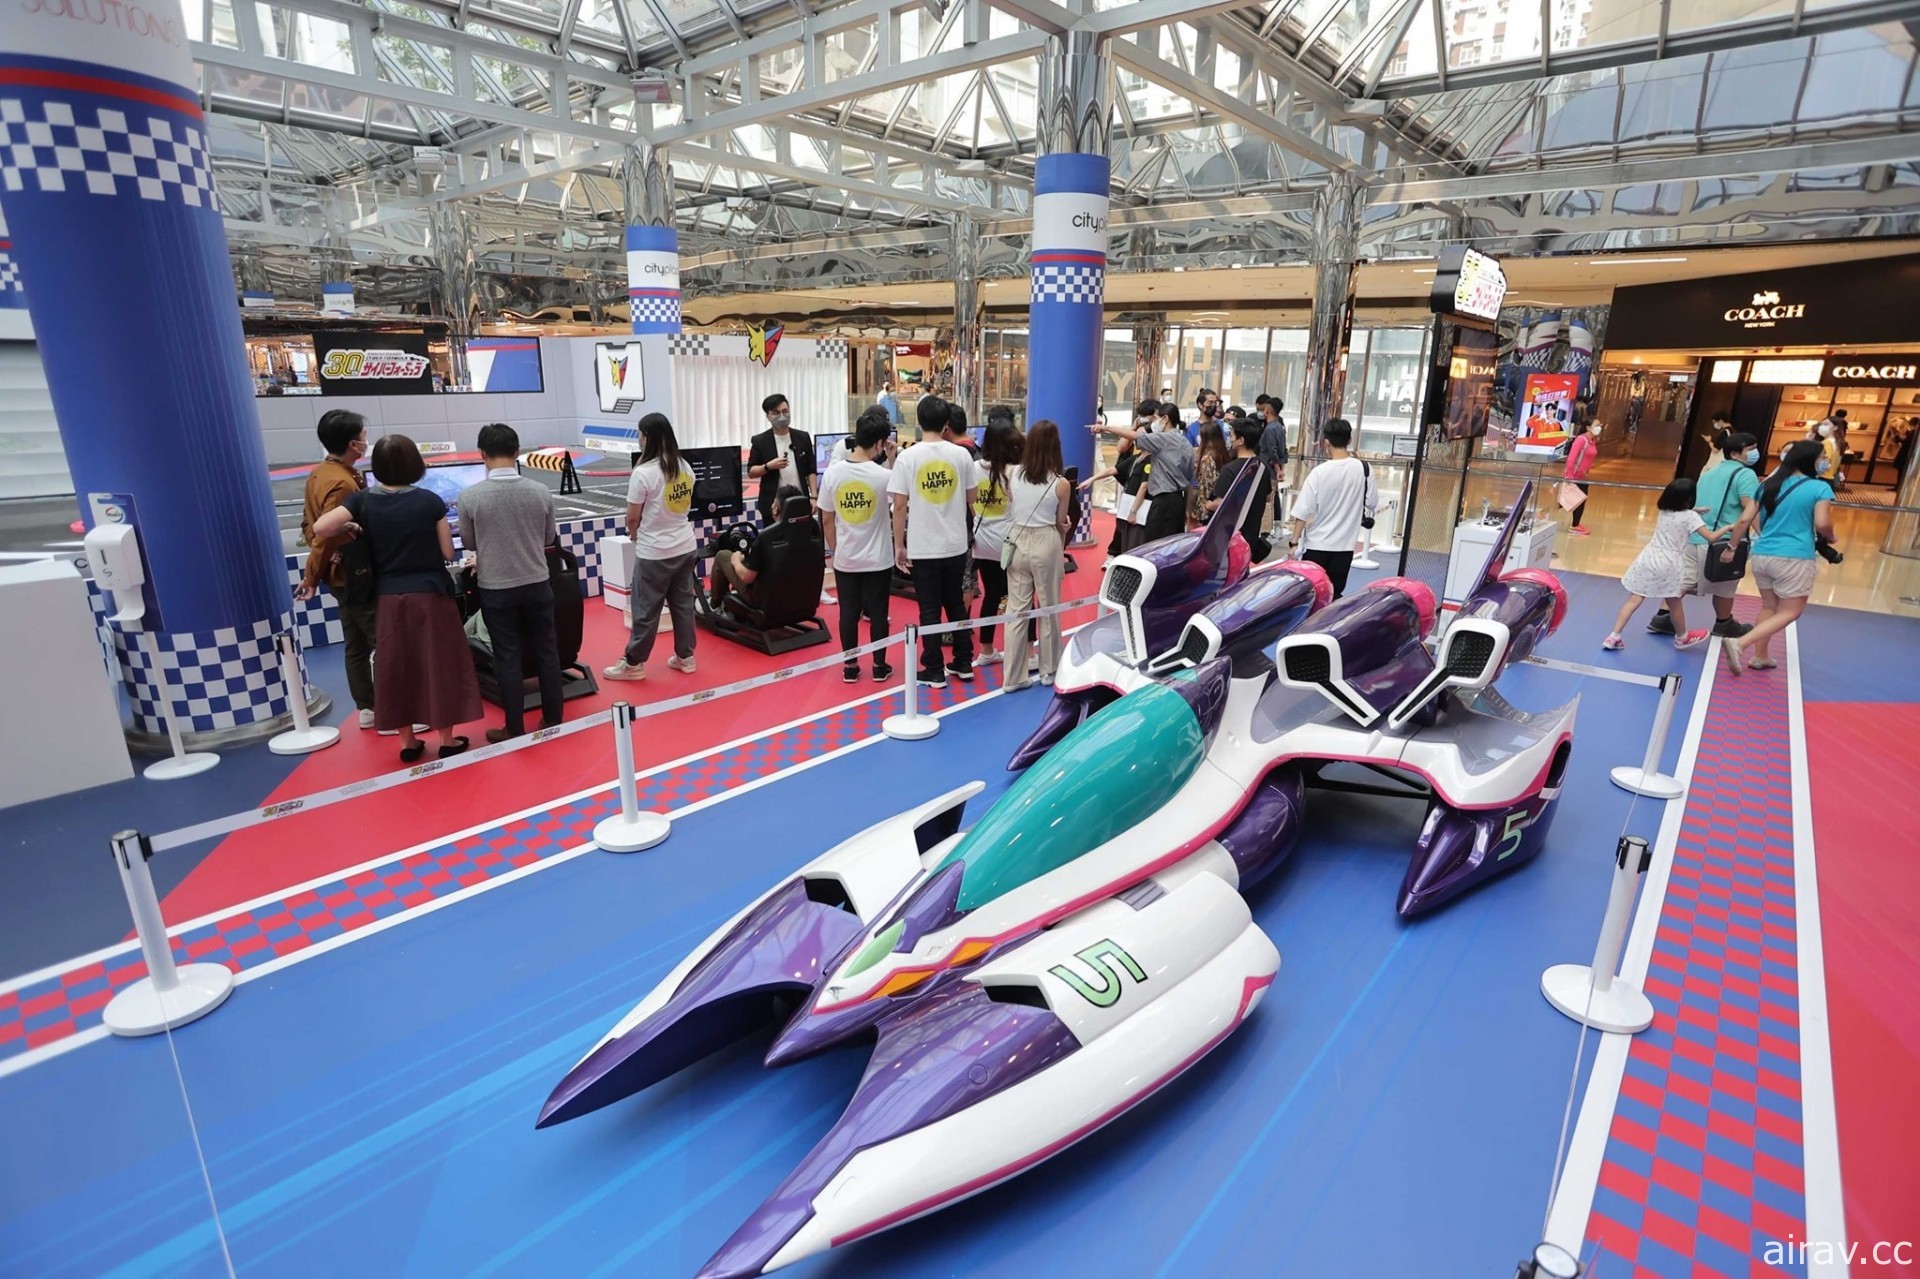 「閃電霹靂車 World Tour 台灣 GP」「Megahobby EXPO」1/7 起於台北三創登場